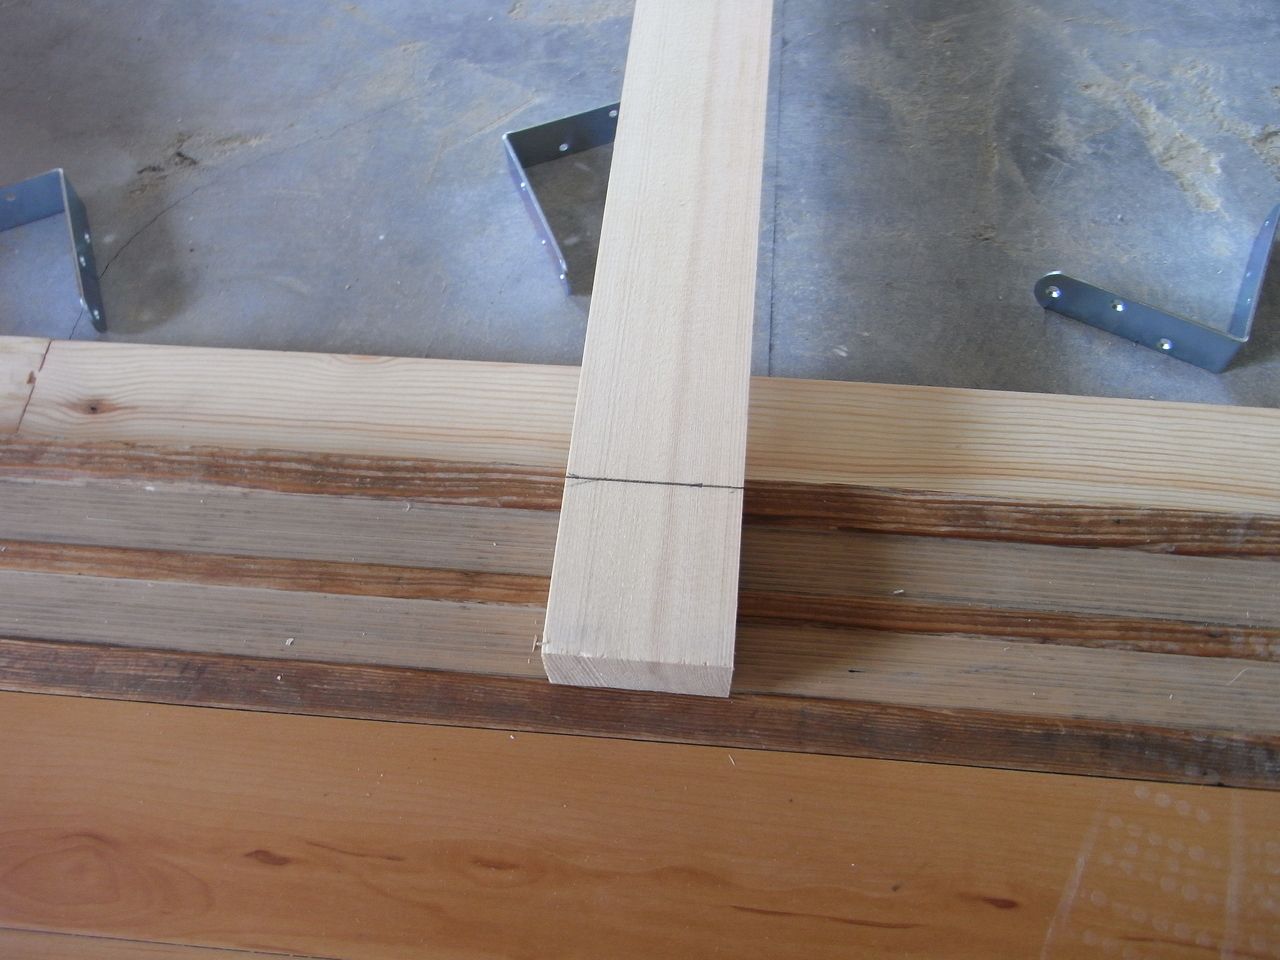 壁際の根太材を壁際から少し内側に入れるので、一文字プレートでジョイントさせた根太材の長さが原状のままでは少し長くなってしまいます。
そこで余分な部分を丸ノコでカットしていきます。
ちなみに、上の写真の一番左側に写っているＬ型の道具は「差し金（さしがね）」です。
この道具一つで木材に直角の線を引くだけでなく、木材の幅を測らなくても等分割できたりと色々な使い方ができてとても役に立つ道具です。